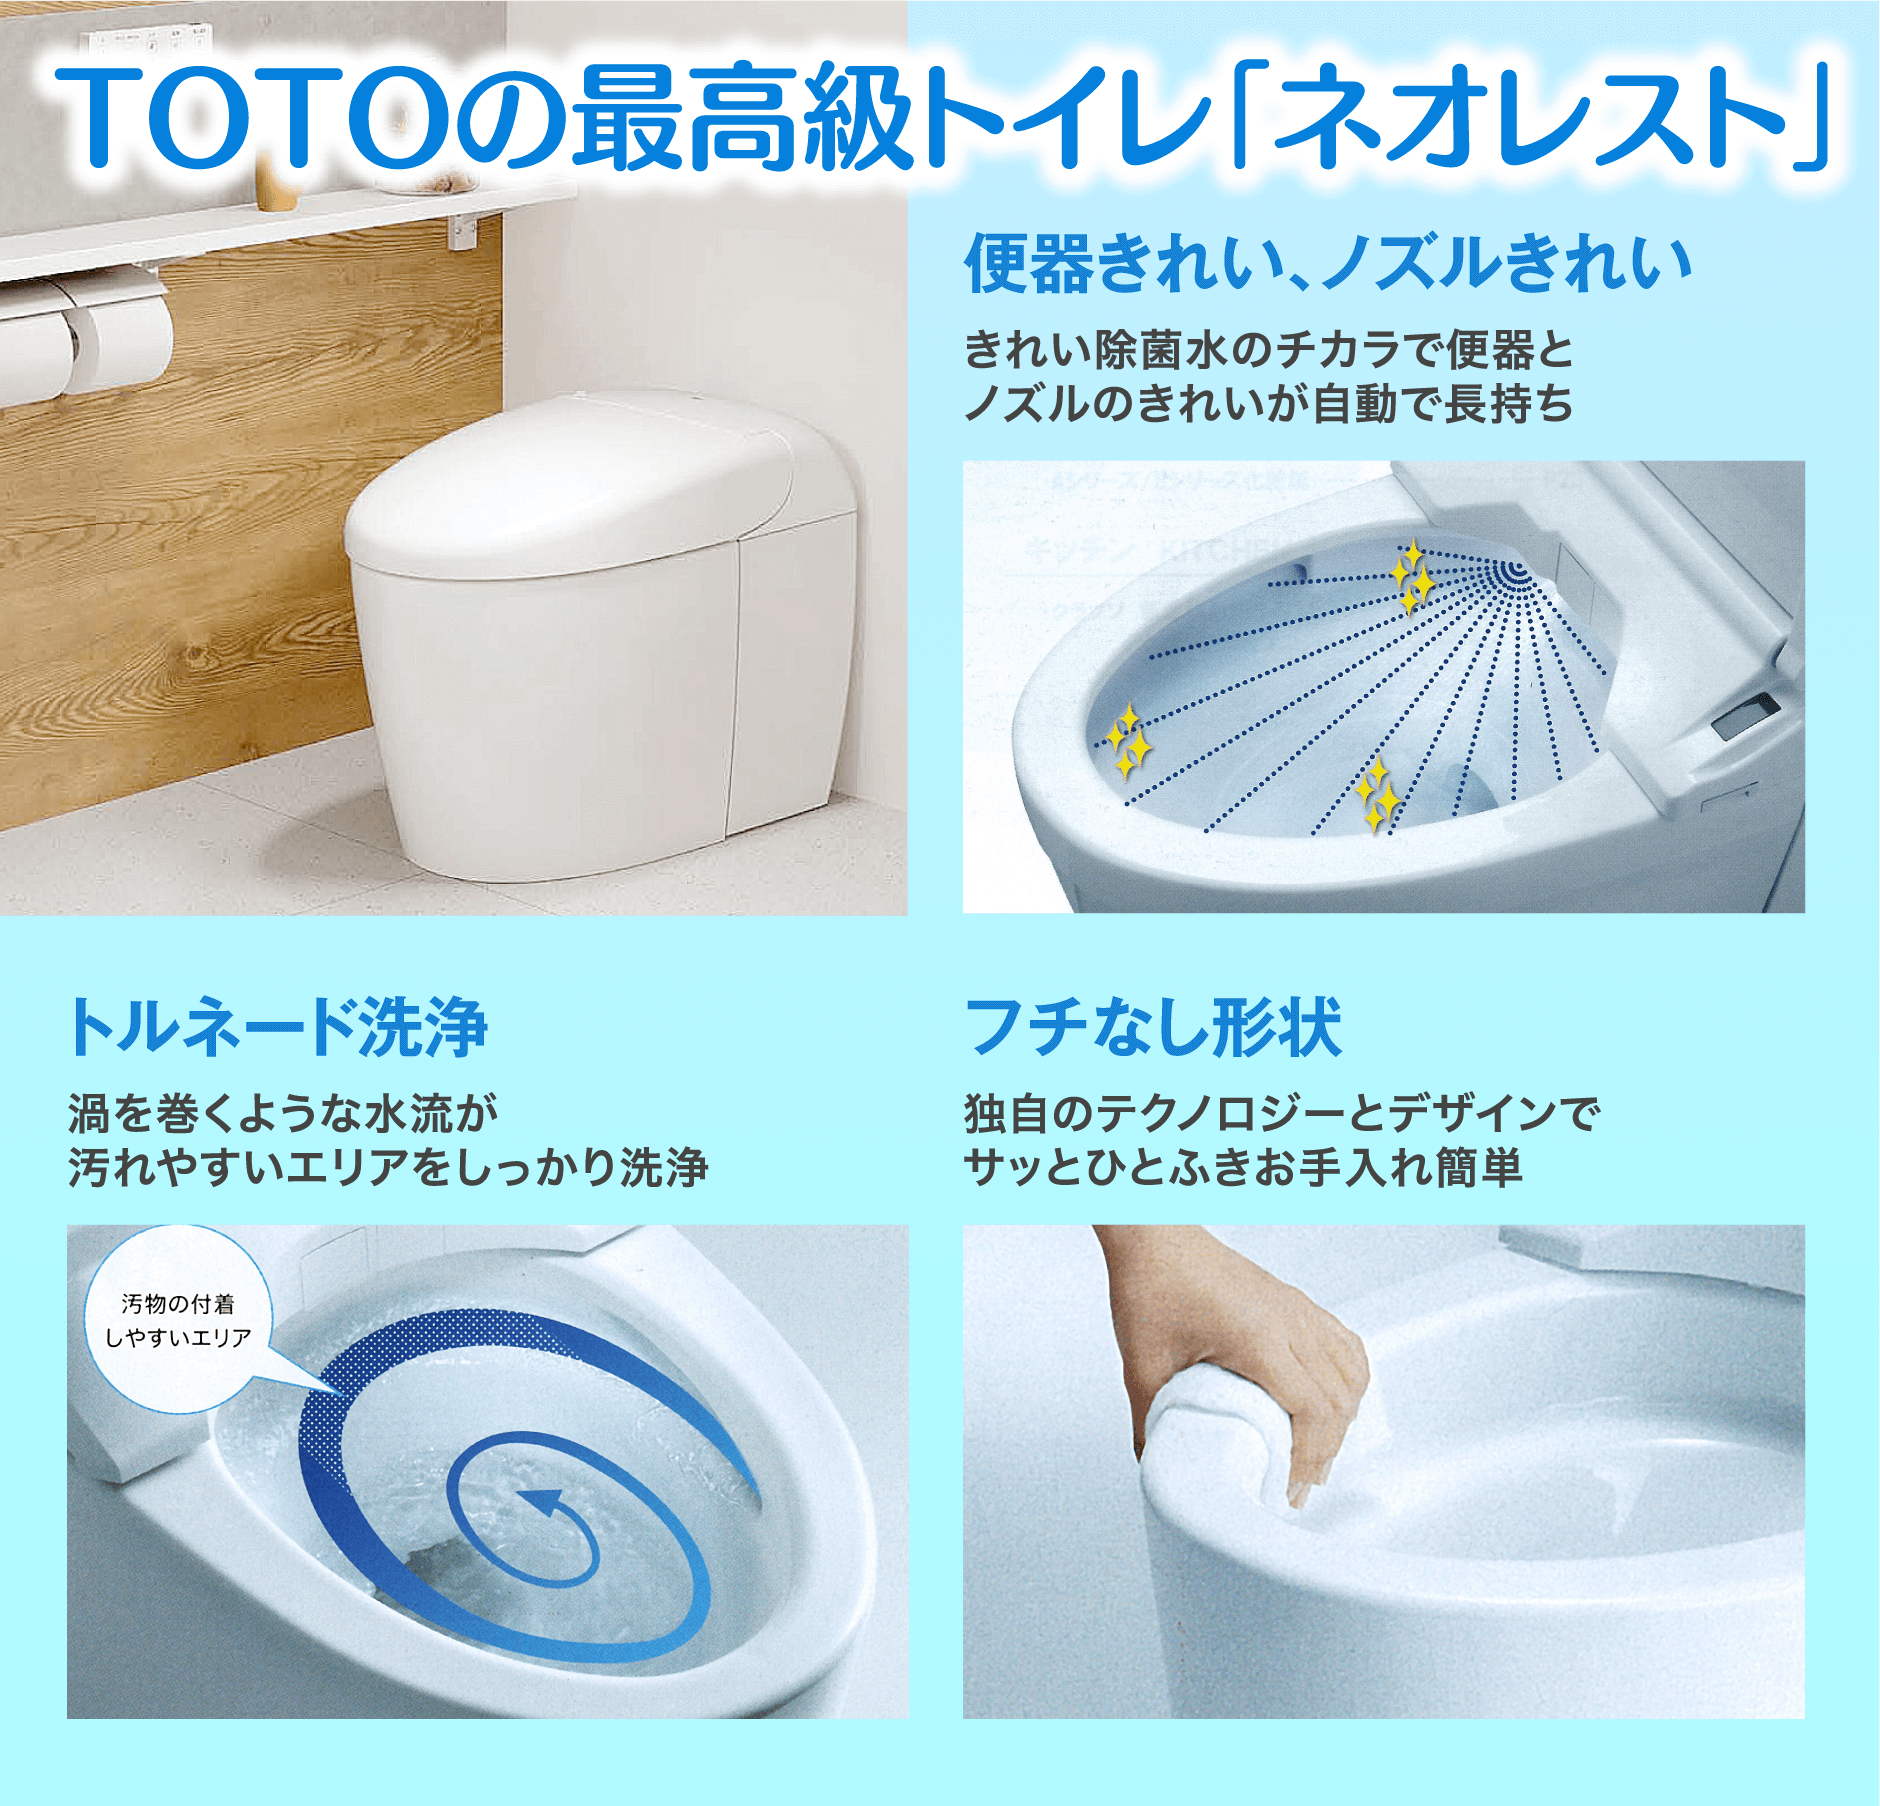 TOTOの最高級トイレのネオレスト 3つの特徴